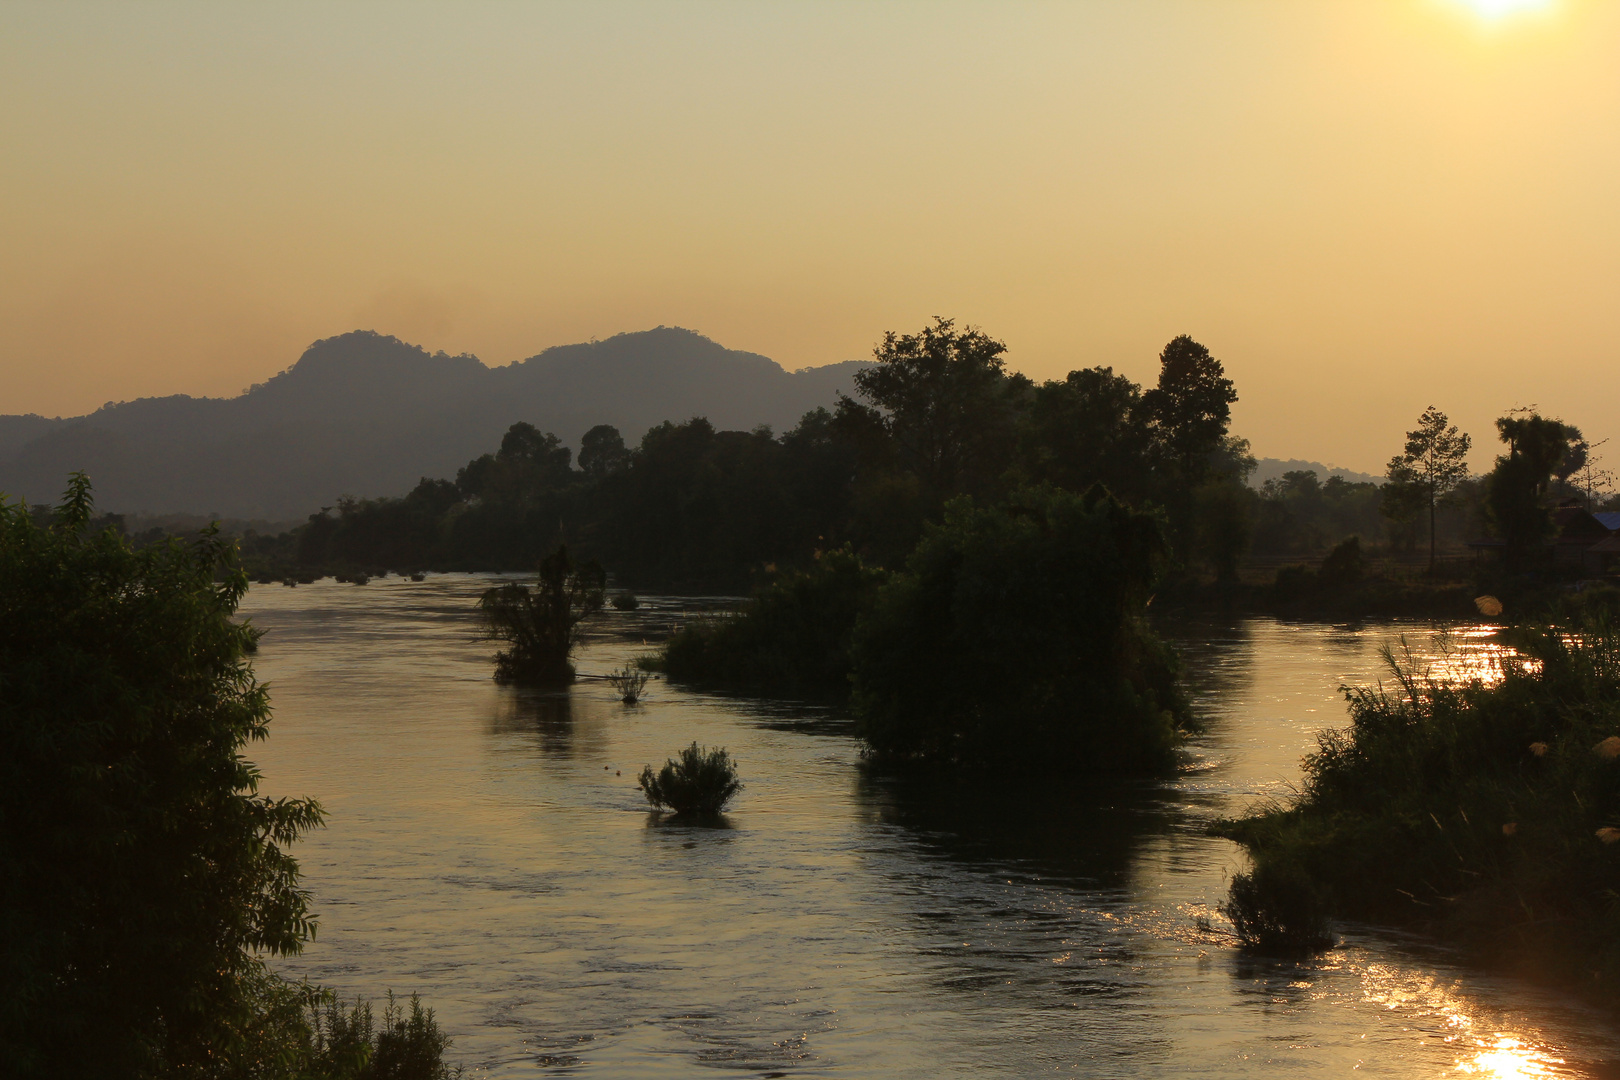 Auf dem Mekong